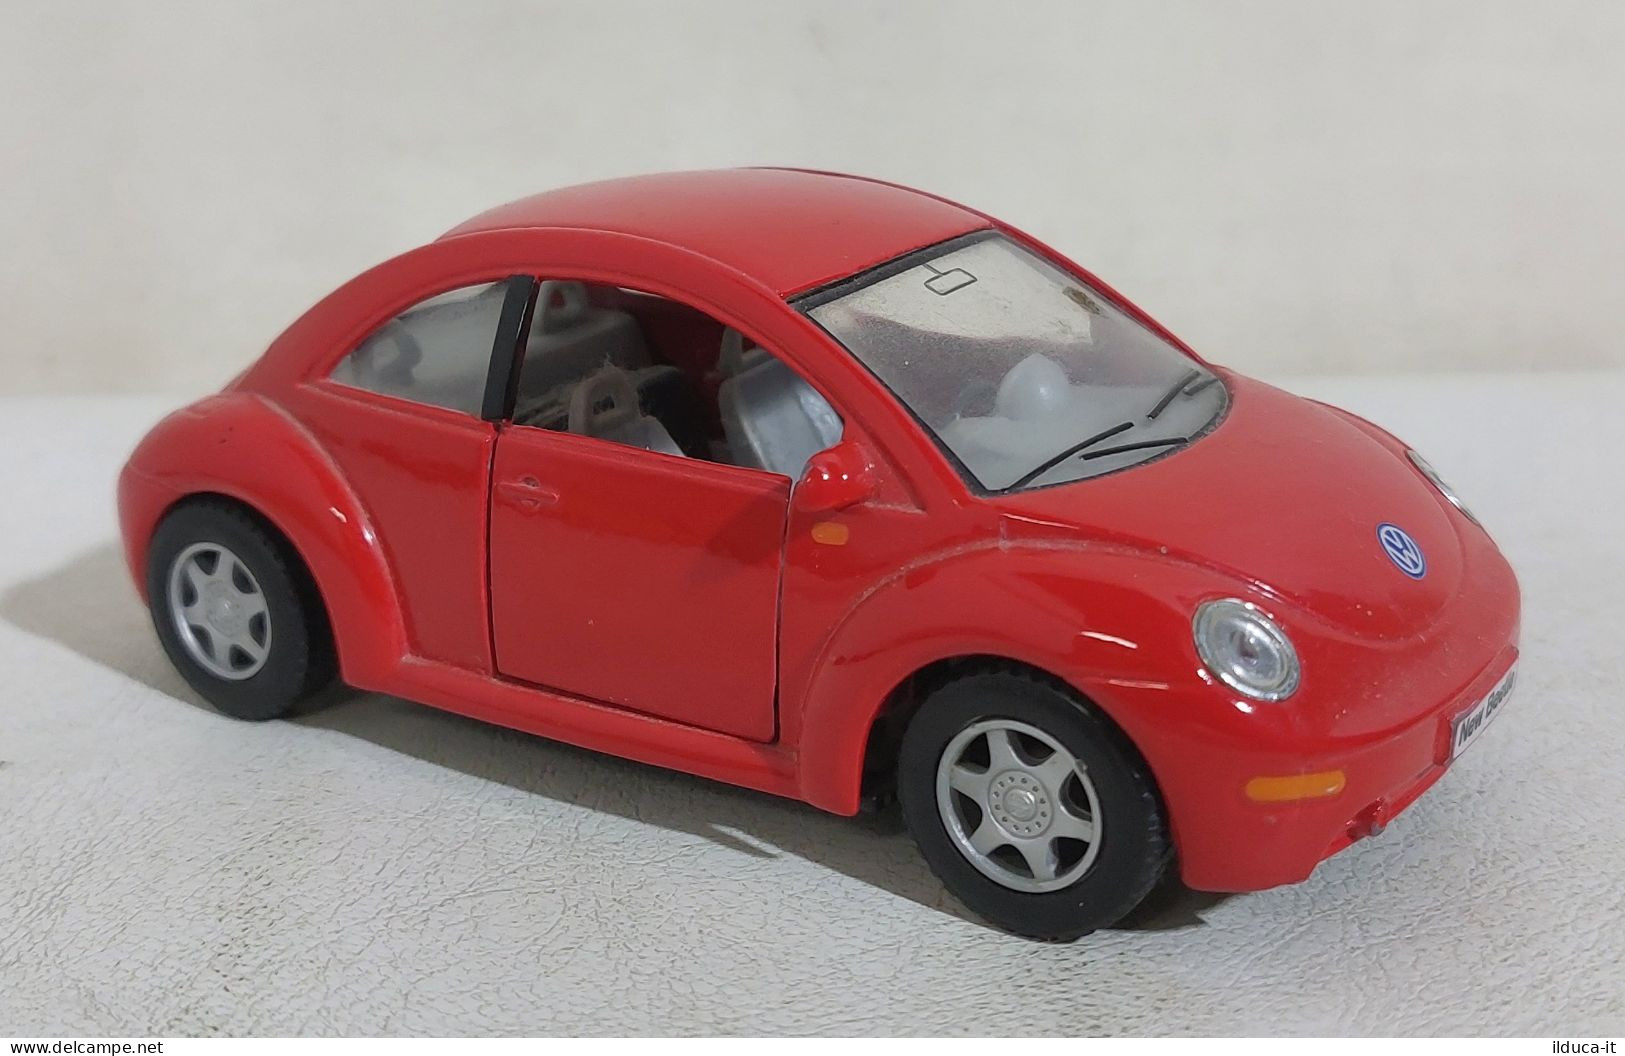 I114962 KINSMART 1/32 A Frizione - Volkswagen New Beetle - Echelle 1:32